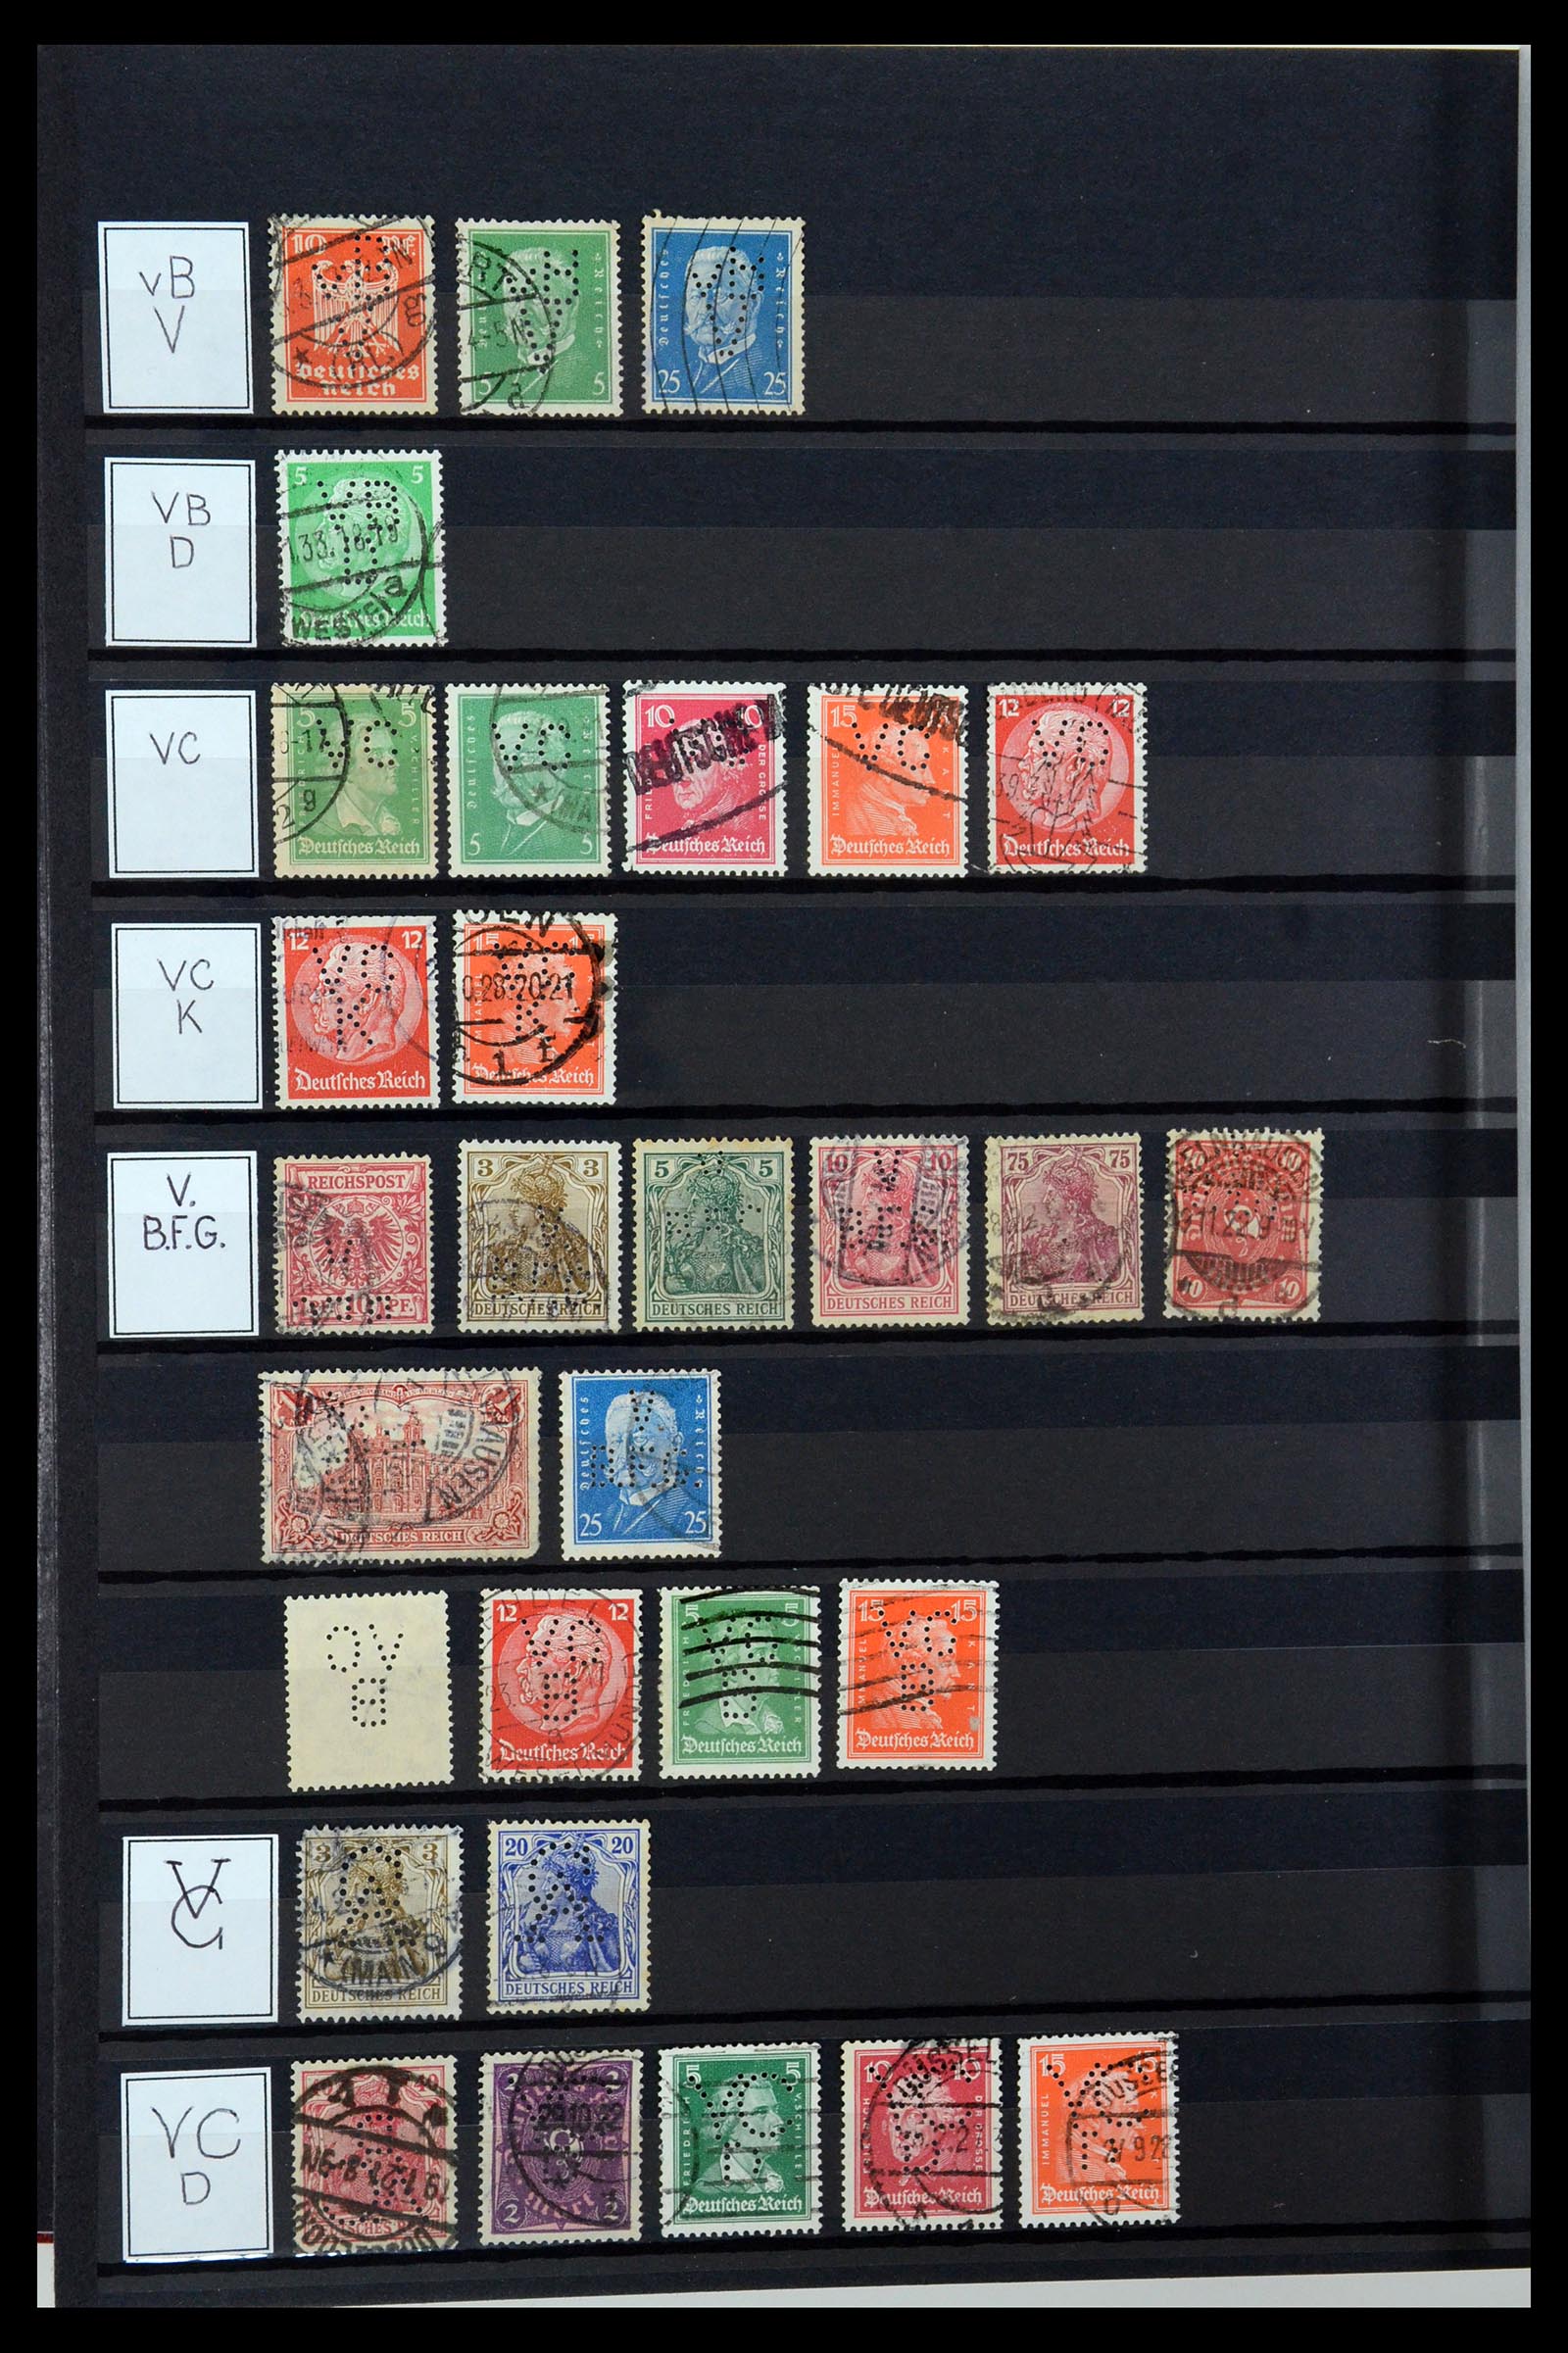 36405 325 - Stamp collection 36405 German Reich perfins 1880-1945.